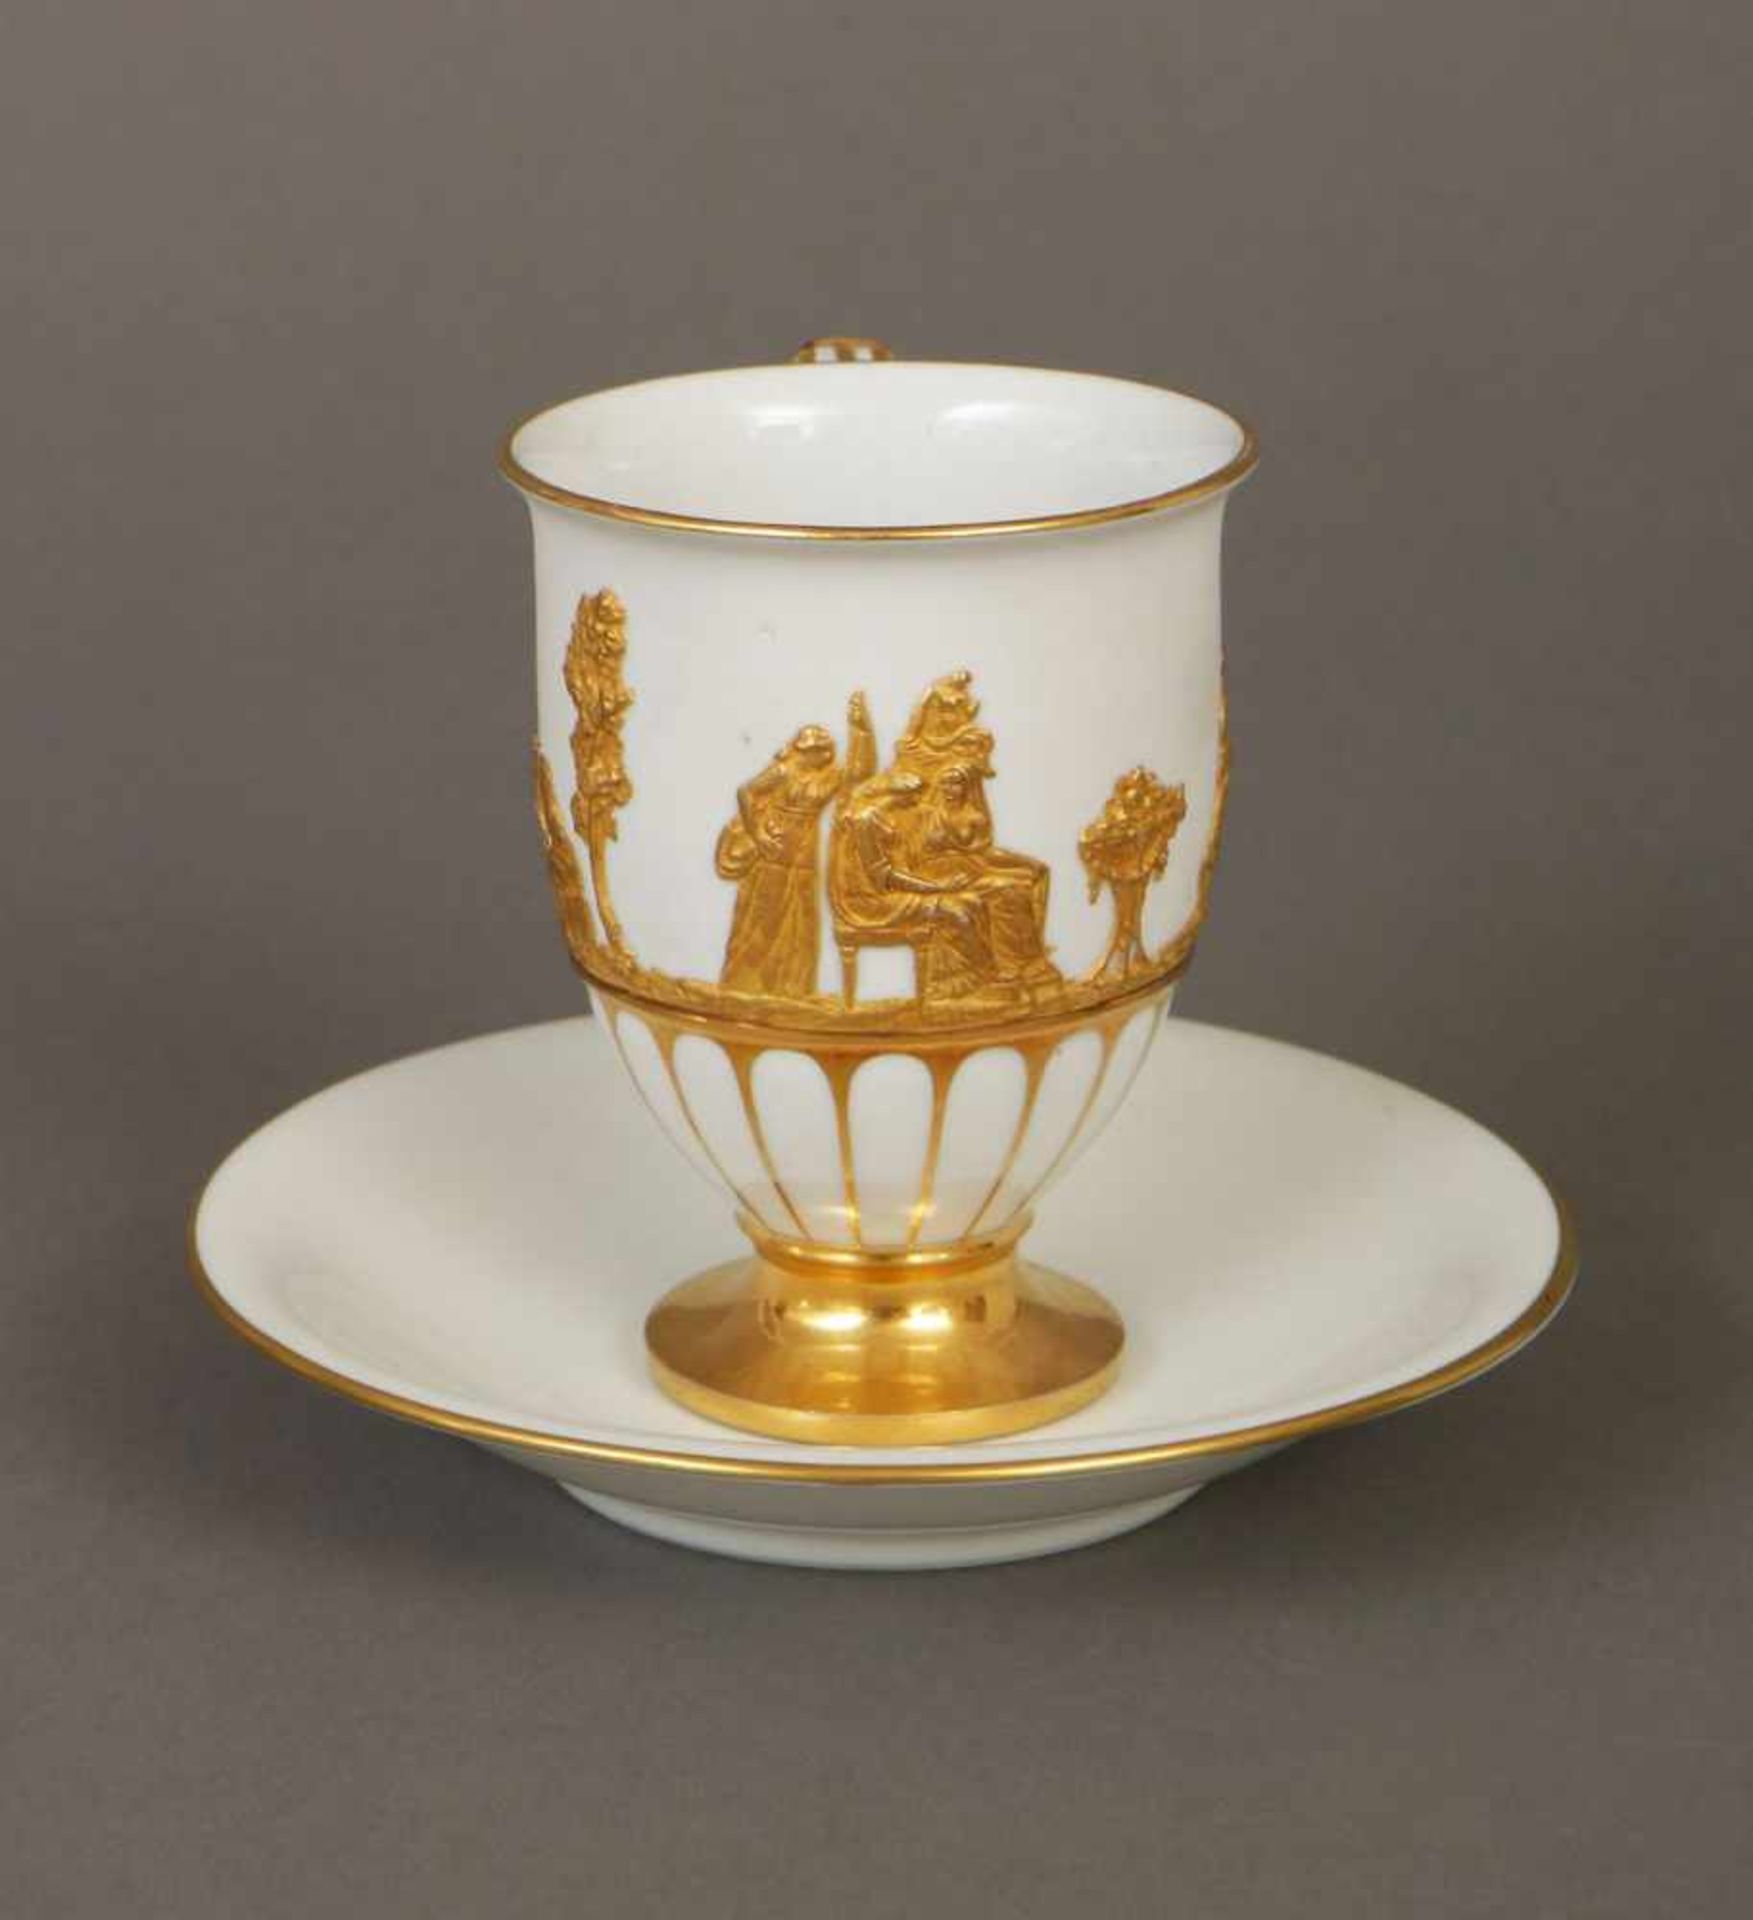 MEISSEN Tasse des frühen 19. Jahrhundertsglockenförmiger Korpus mit goldstaffiertem Reliefdekor ¨ - Bild 2 aus 3